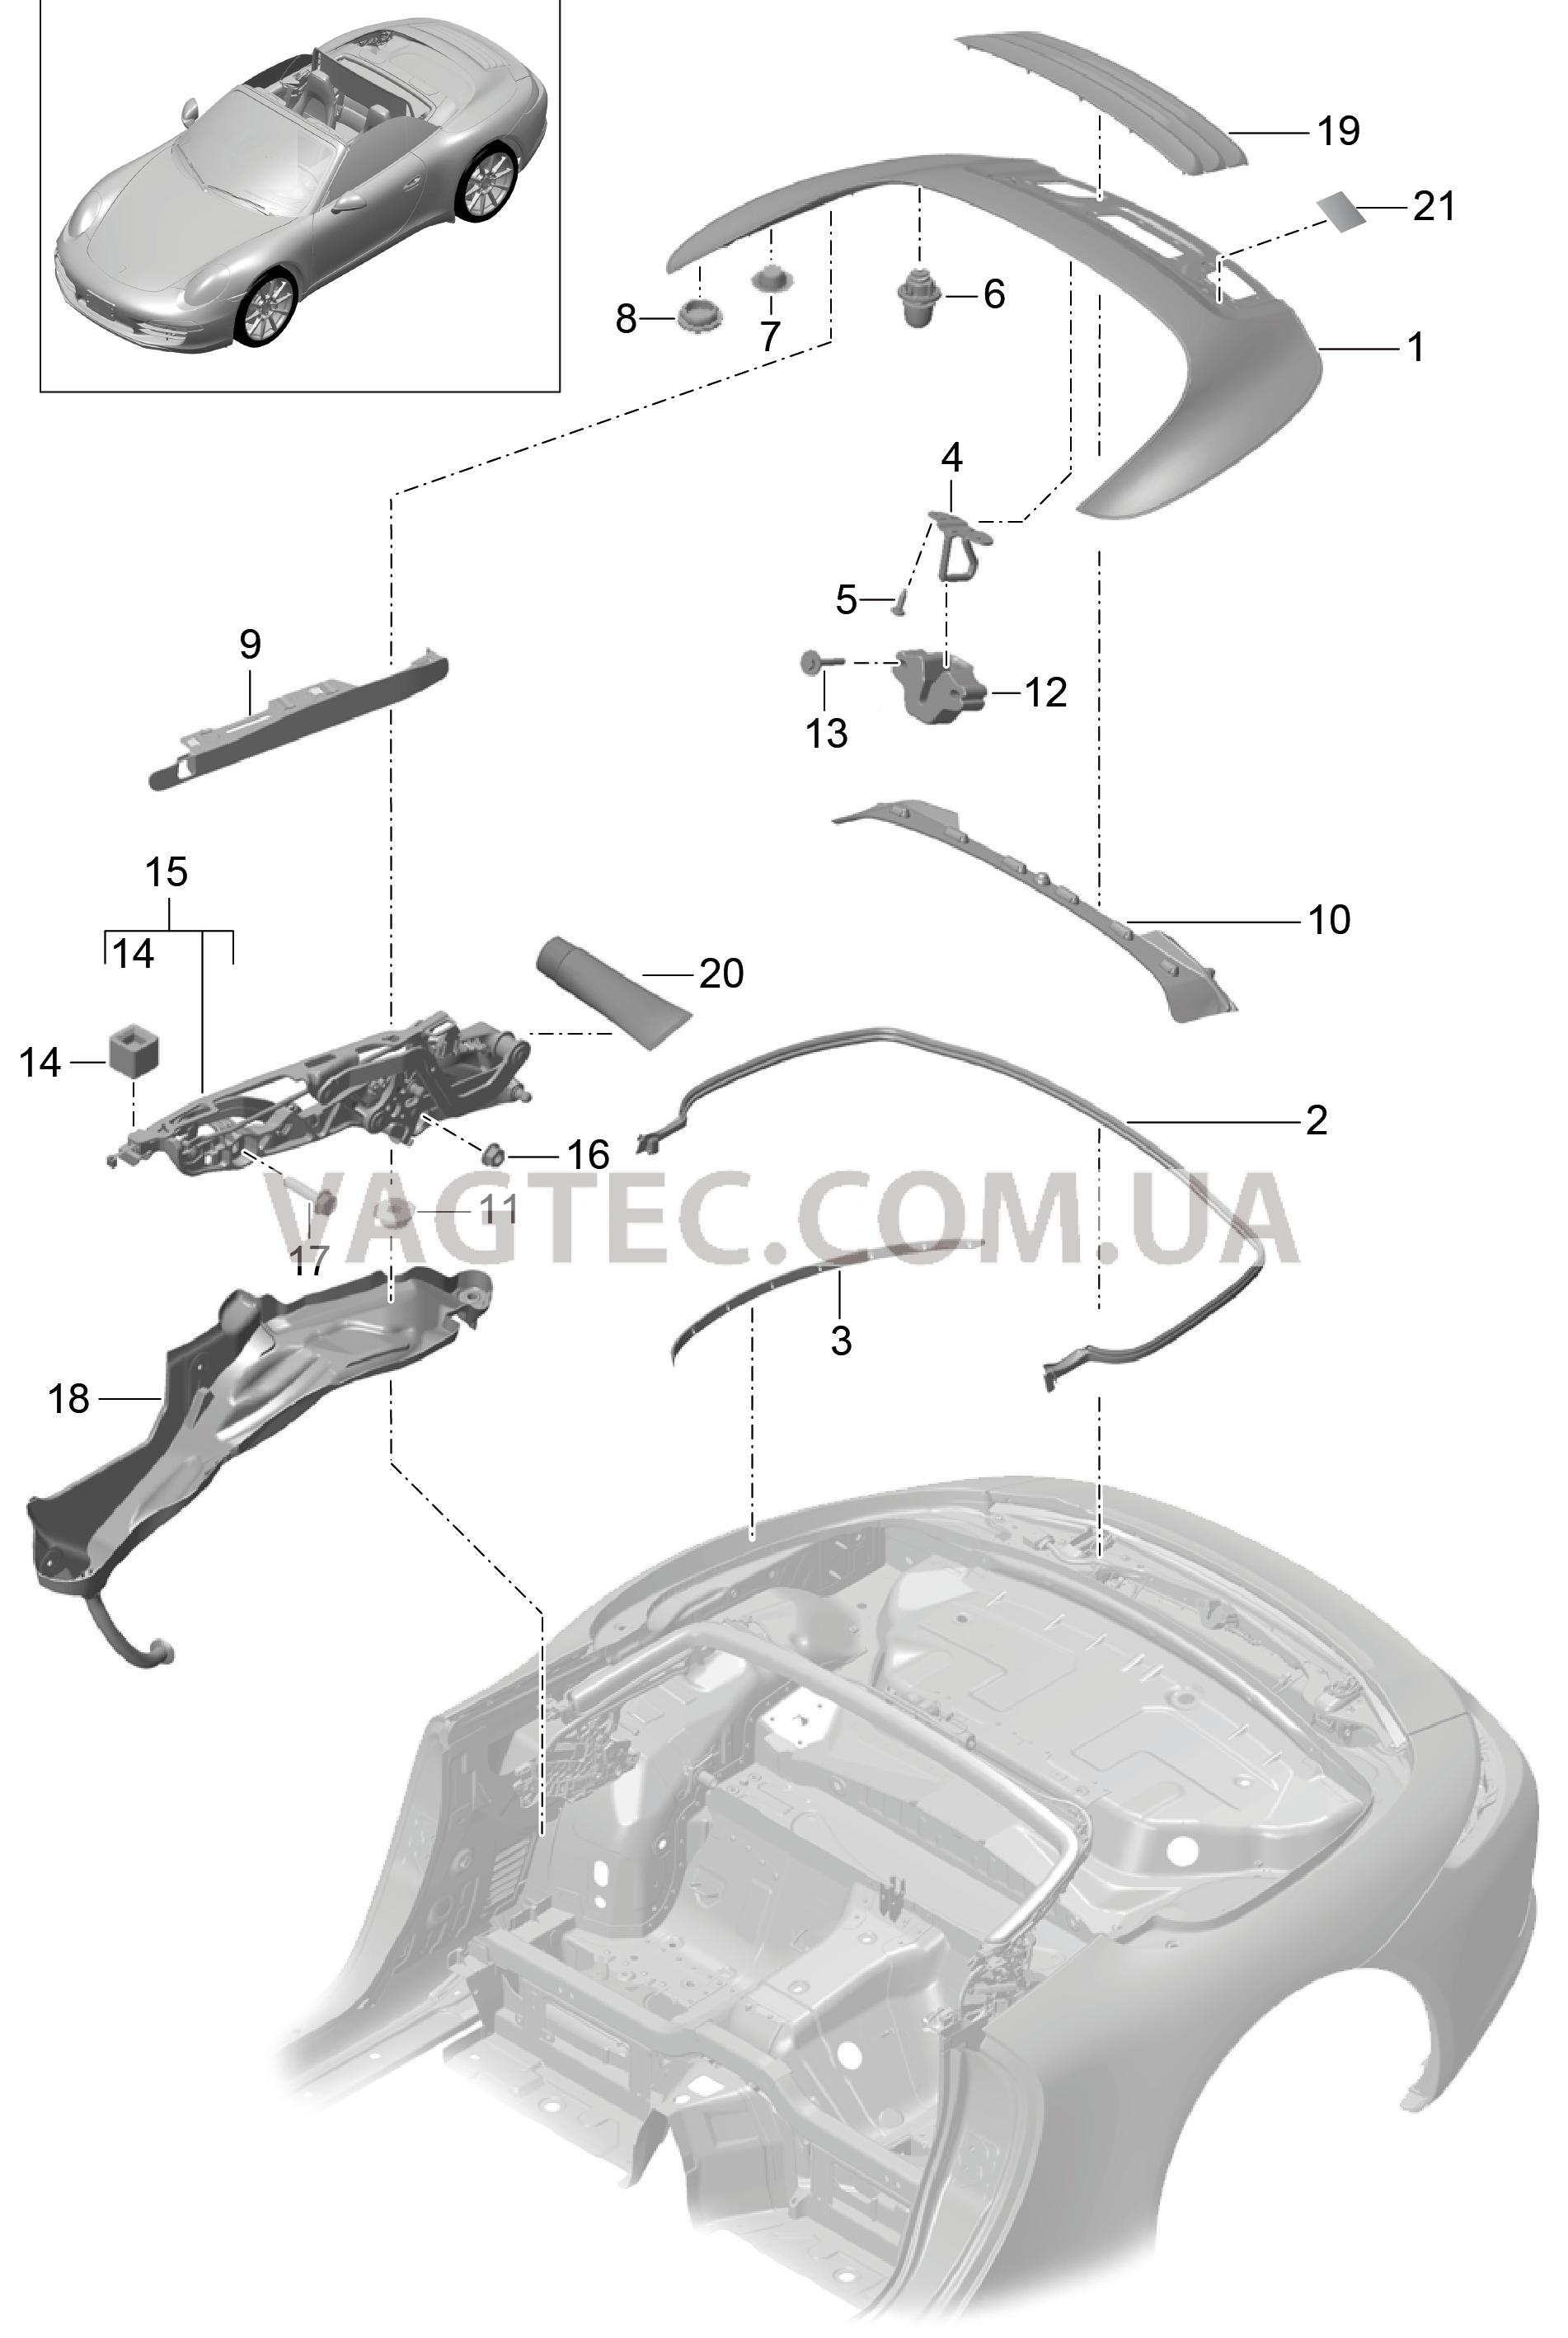 811-060 Отсек складного верха, Крышка
						
						CABRIO для PORSCHE 911.Carrera 2012-2016